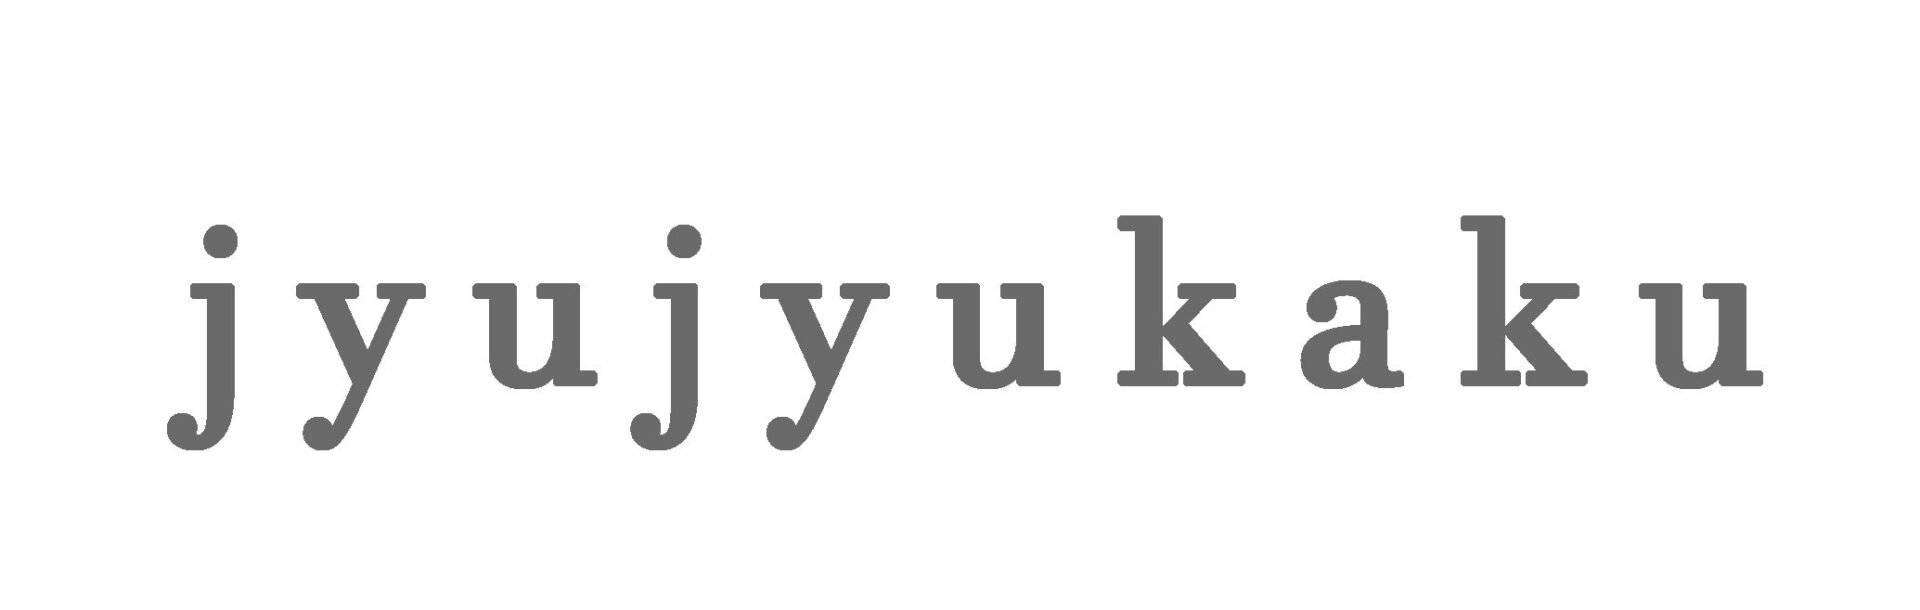 jyu